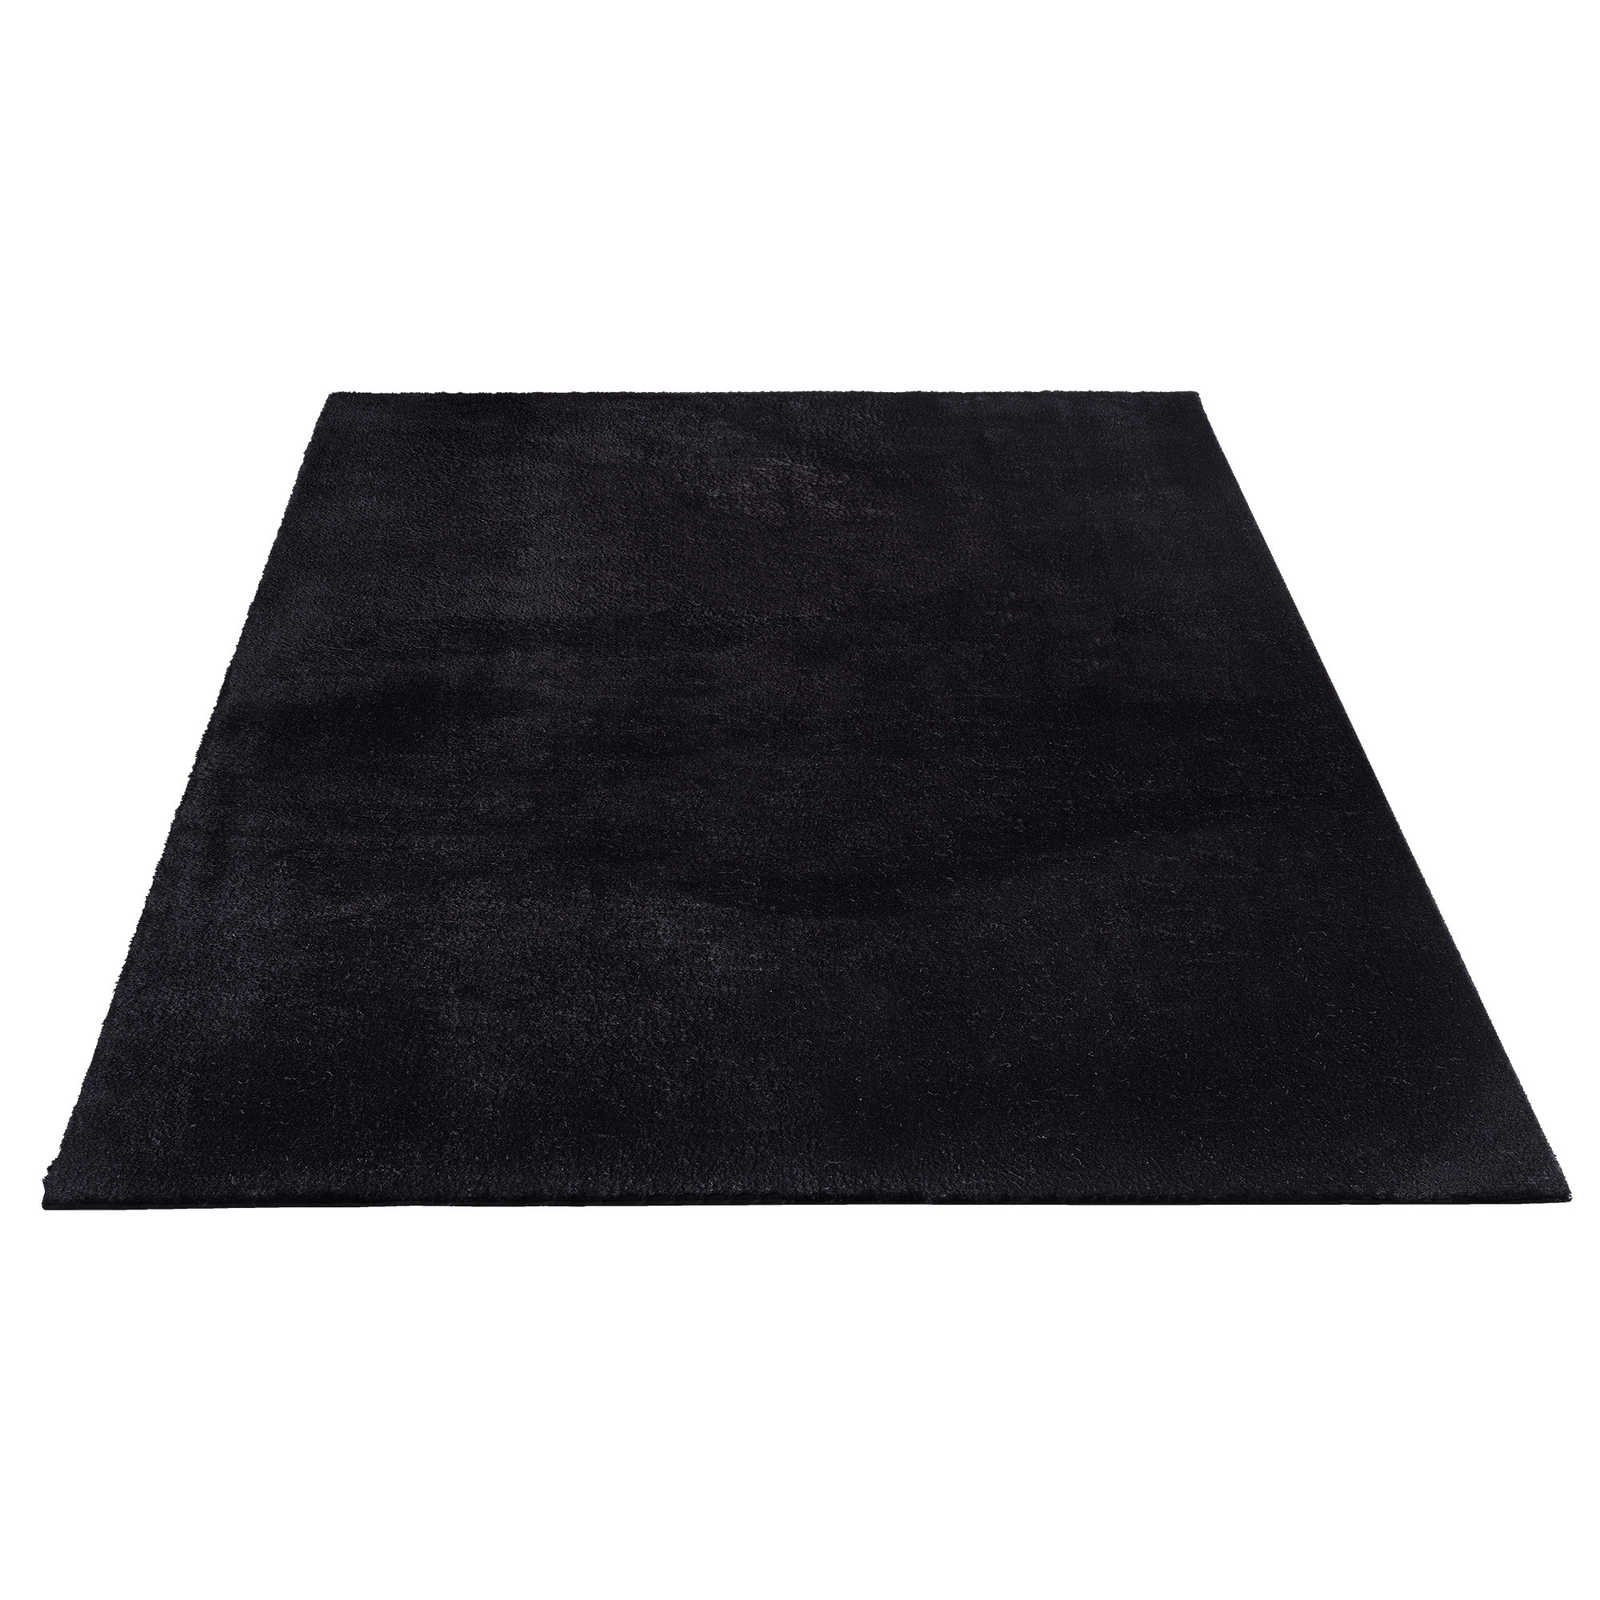 Velvety high pile carpet in black - 340 x 240 cm
